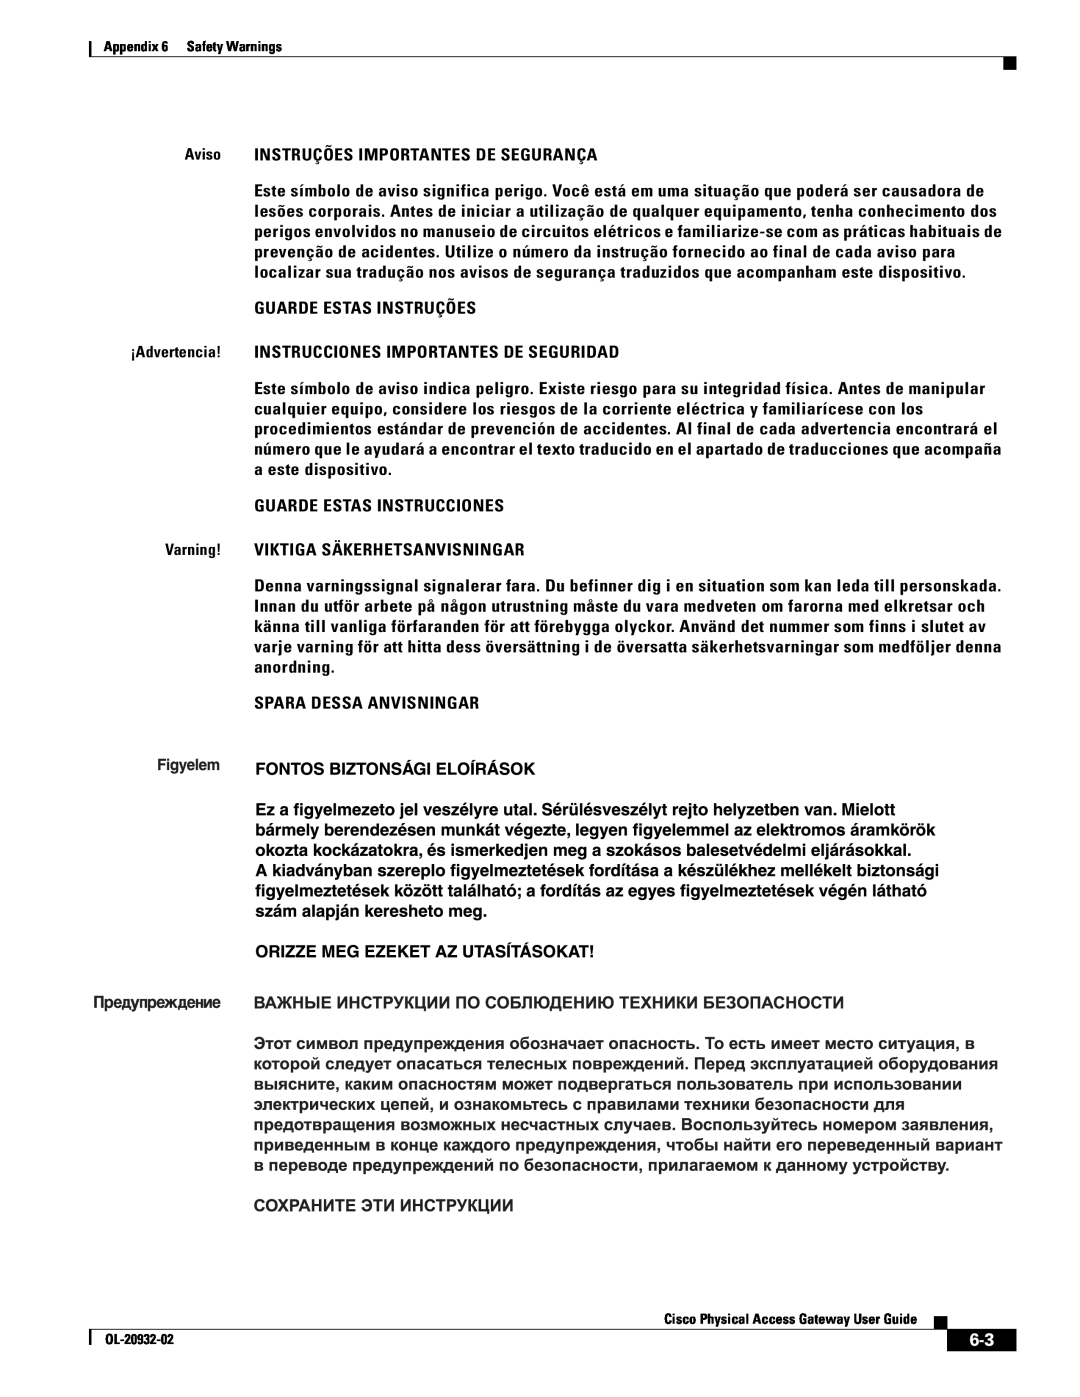 Cisco Systems OL-20932-02 manual Aviso INSTRUÇÕES IMPORTANTES DE SEGURANÇA 